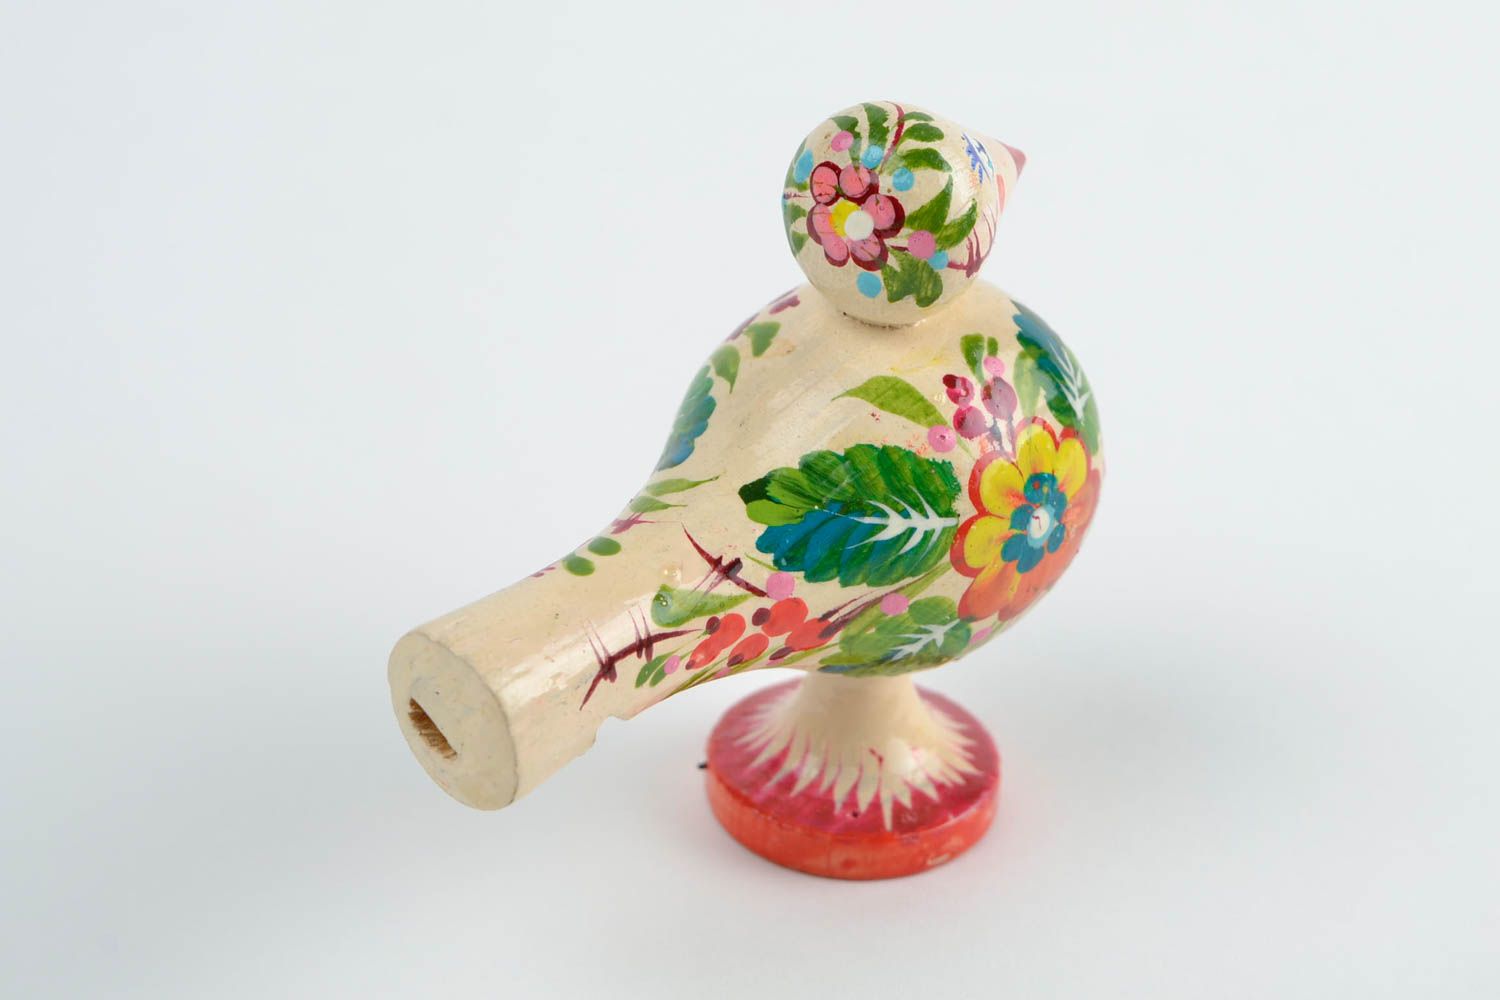 Wooden handmade whistle ethnic toy for children designer Petrikivka style gift photo 5